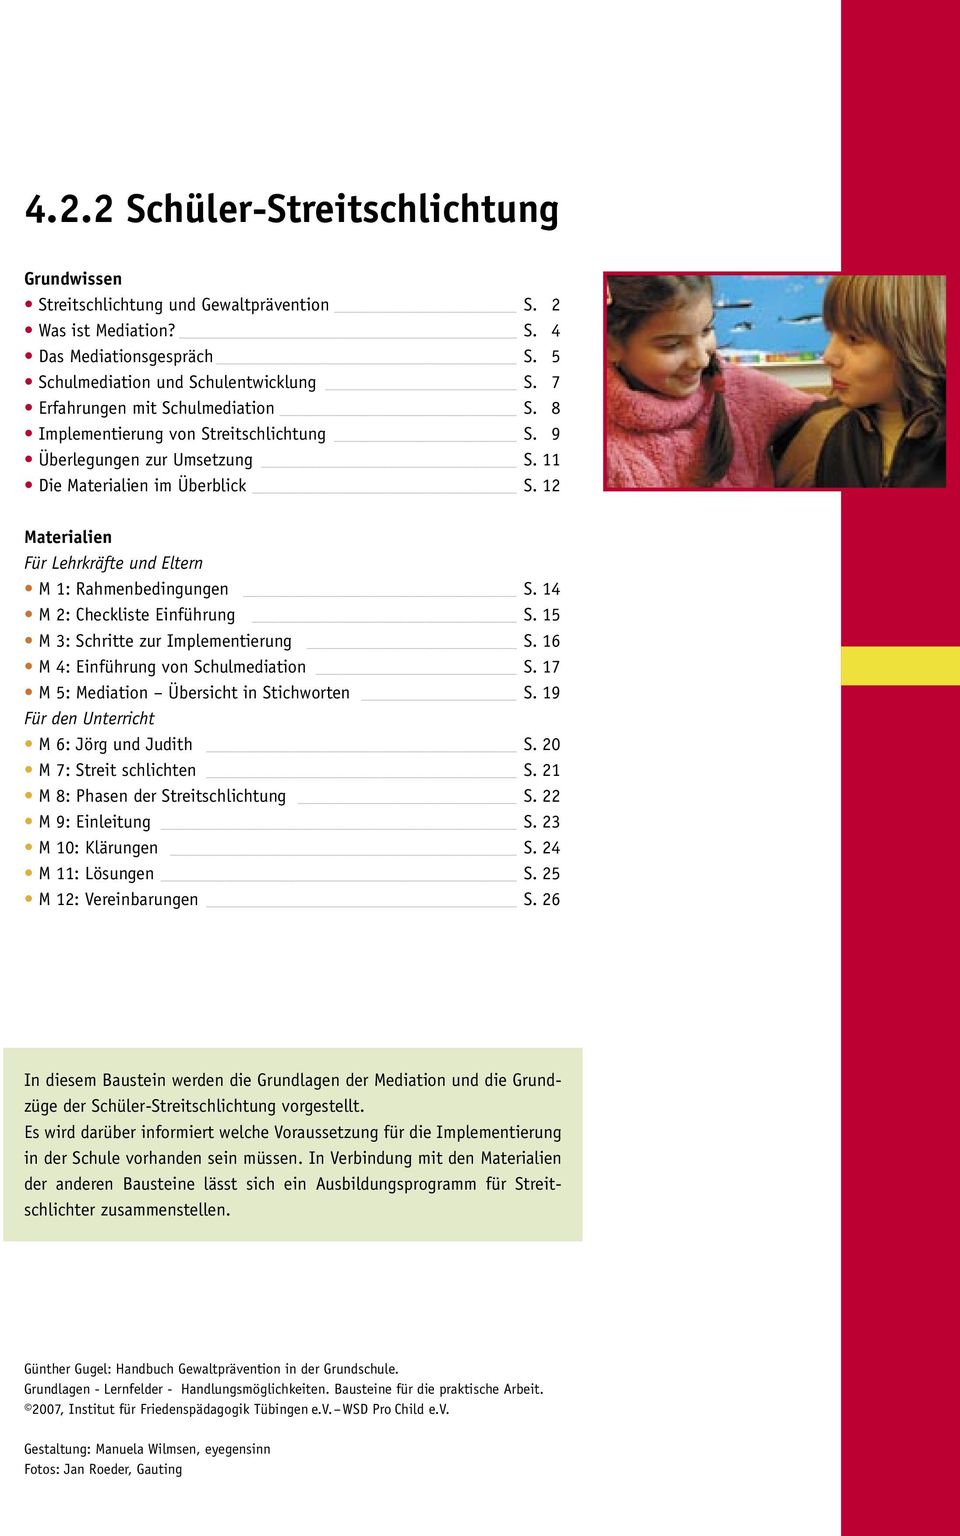 12 Materialien Für Lehrkräfte und Eltern M 1: Rahmenbedingungen S. 14 M 2: Checkliste Einführung S. 15 M 3: Schritte zur Implementierung S. 16 M 4: Einführung von Schulmediation S.